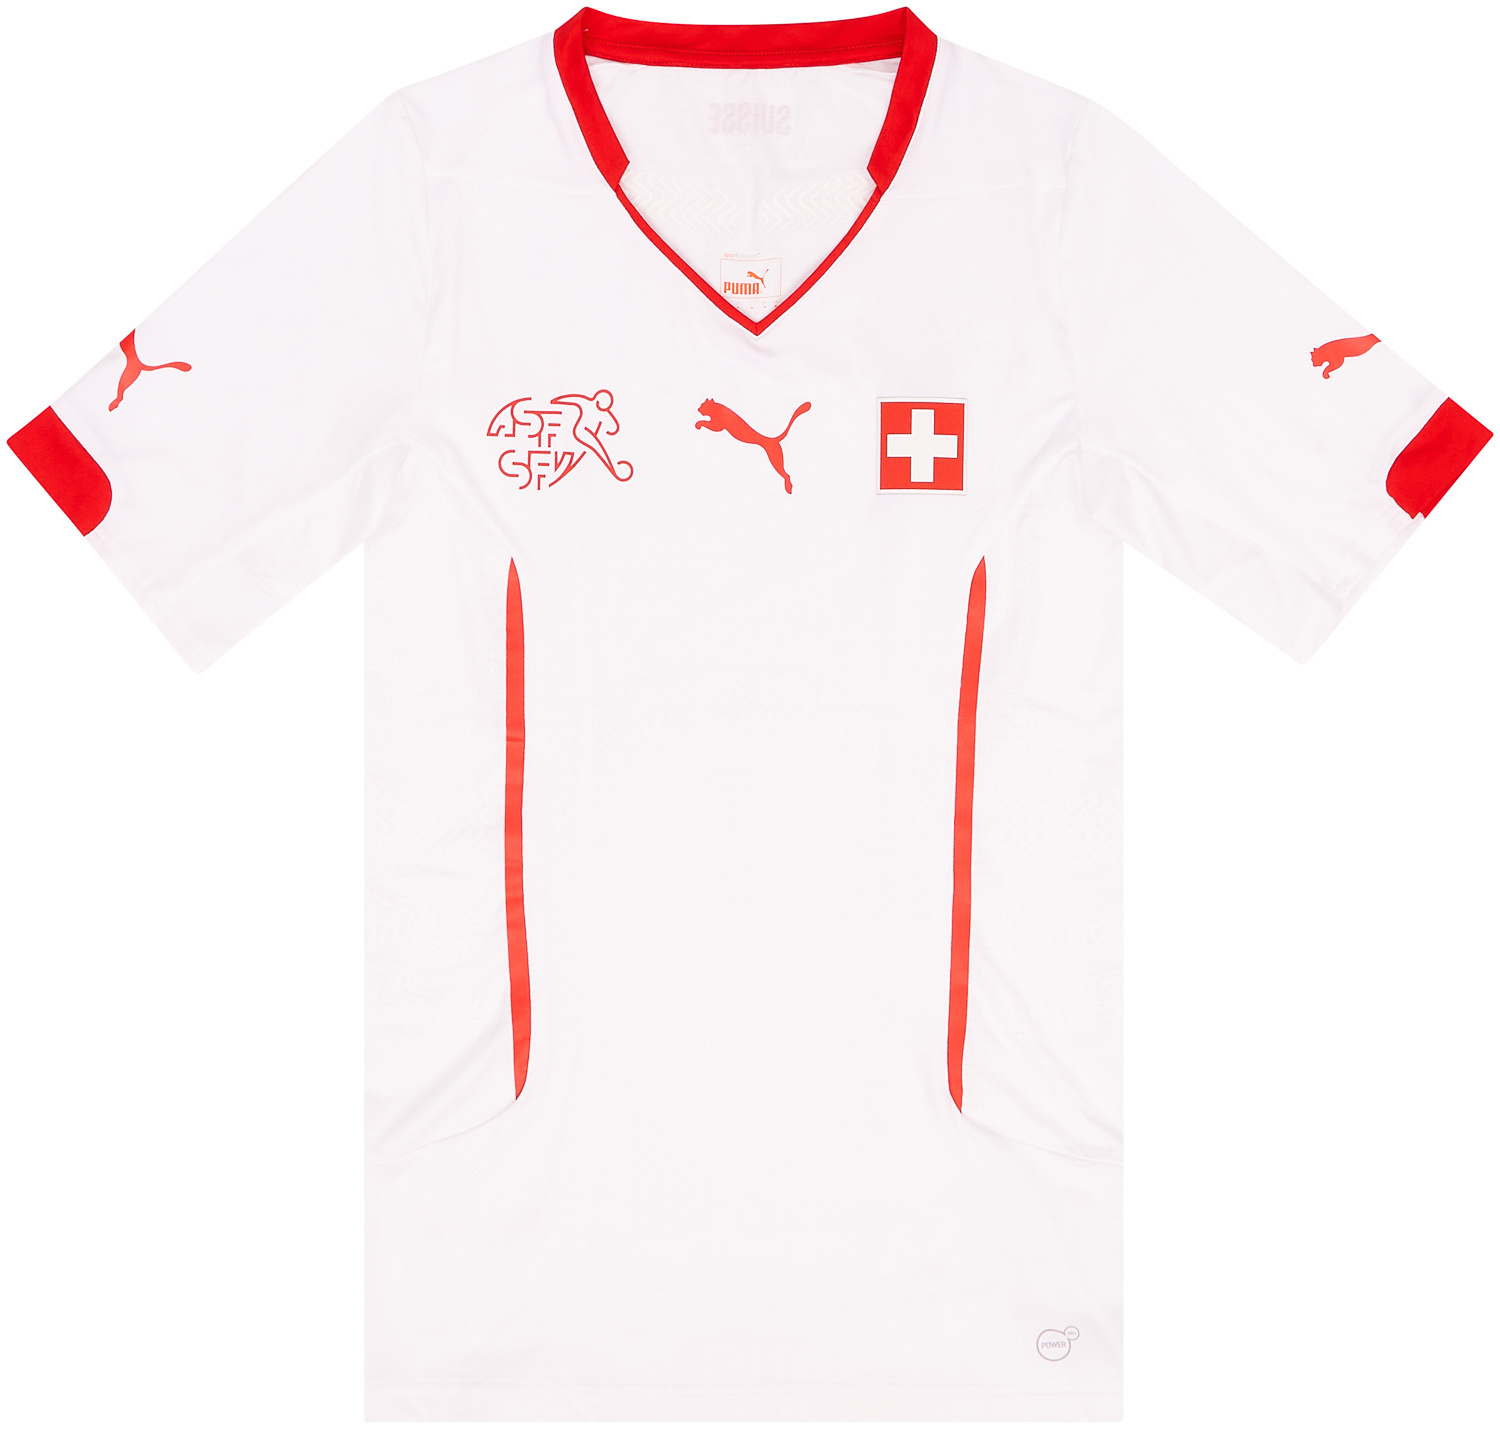 Retro Switzerland Shirt